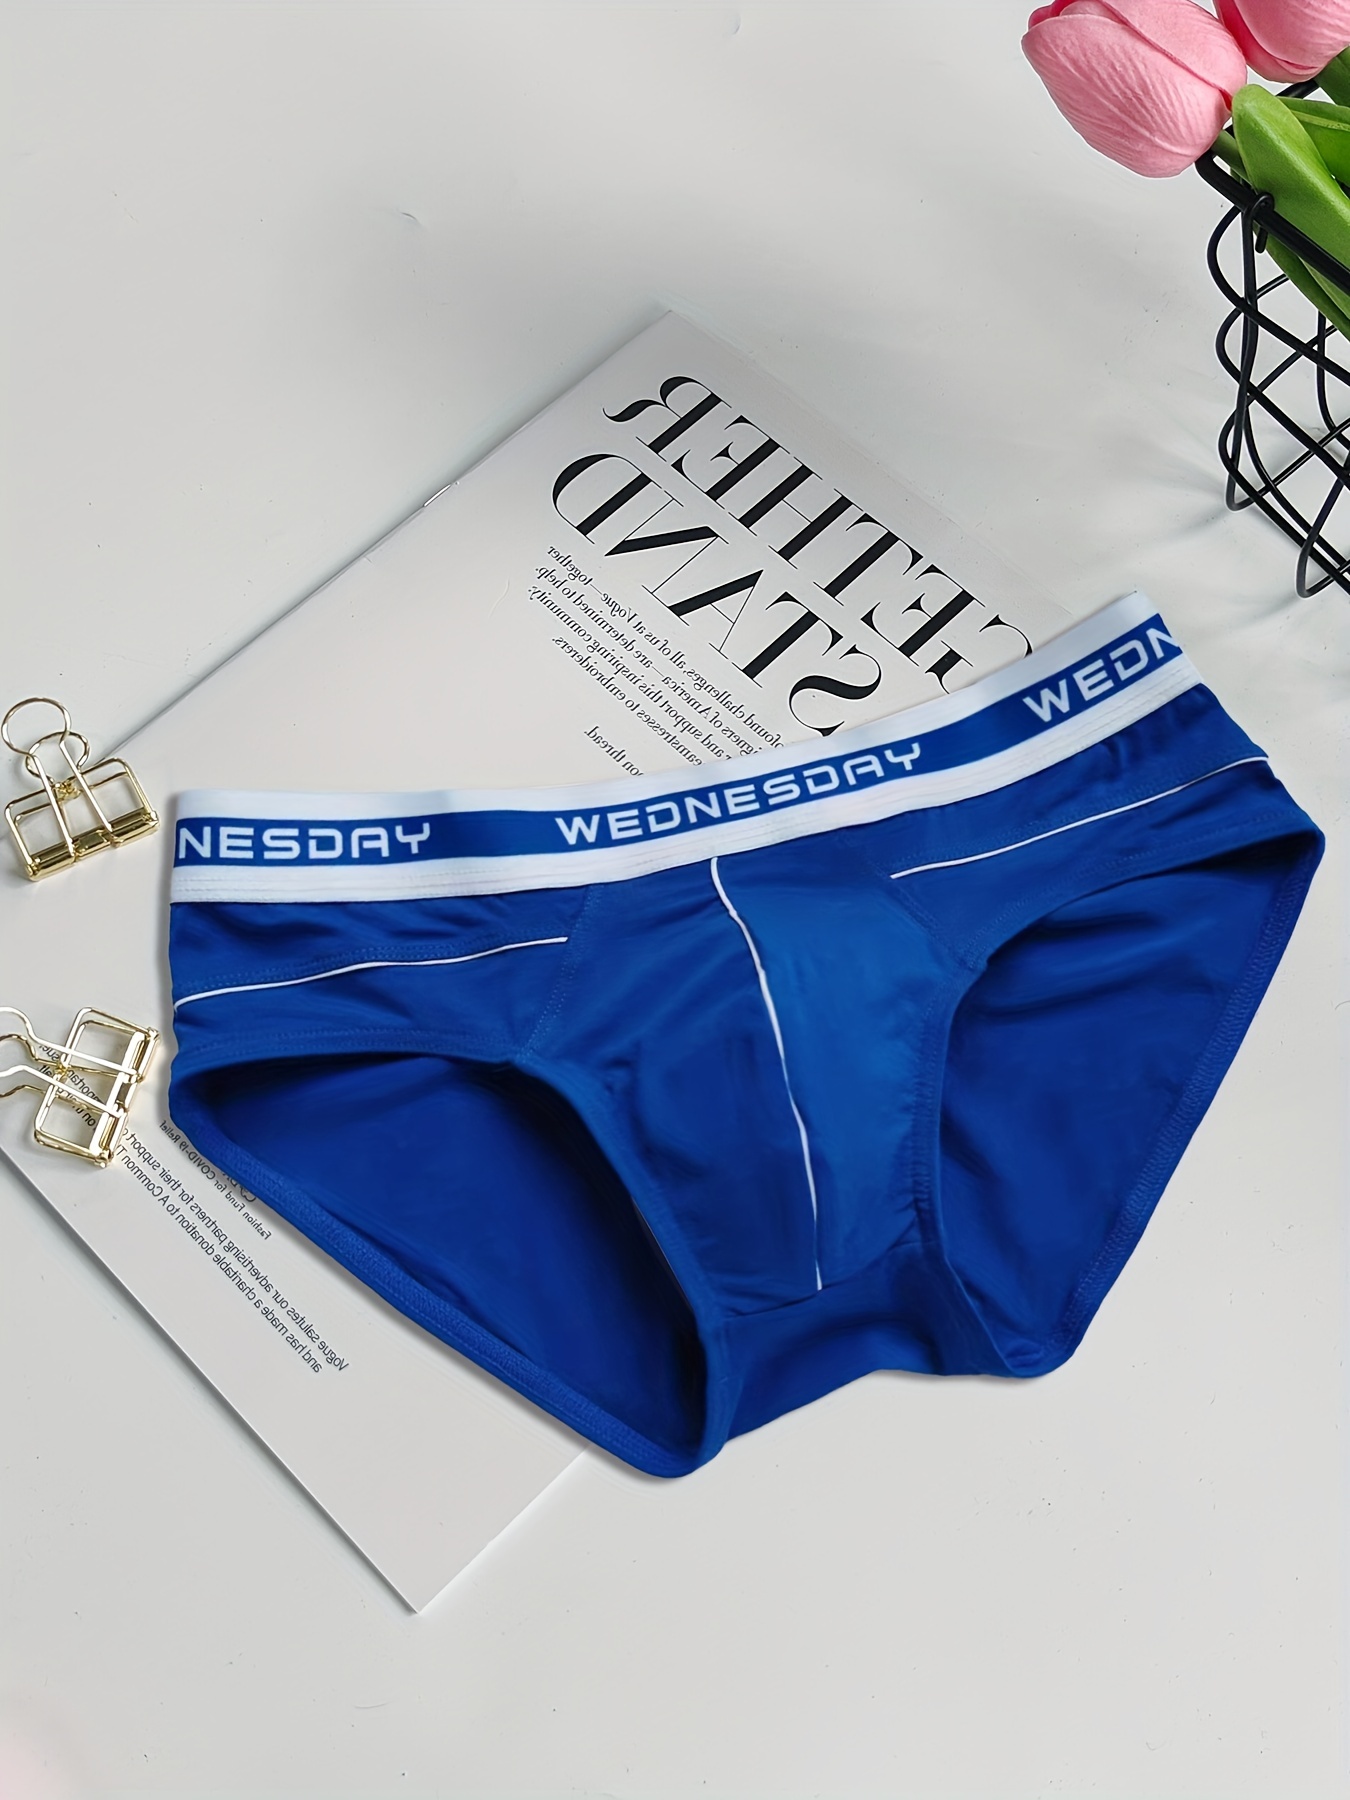 United Colors of Benetton Blue Men Underwear & Nightwear Styles